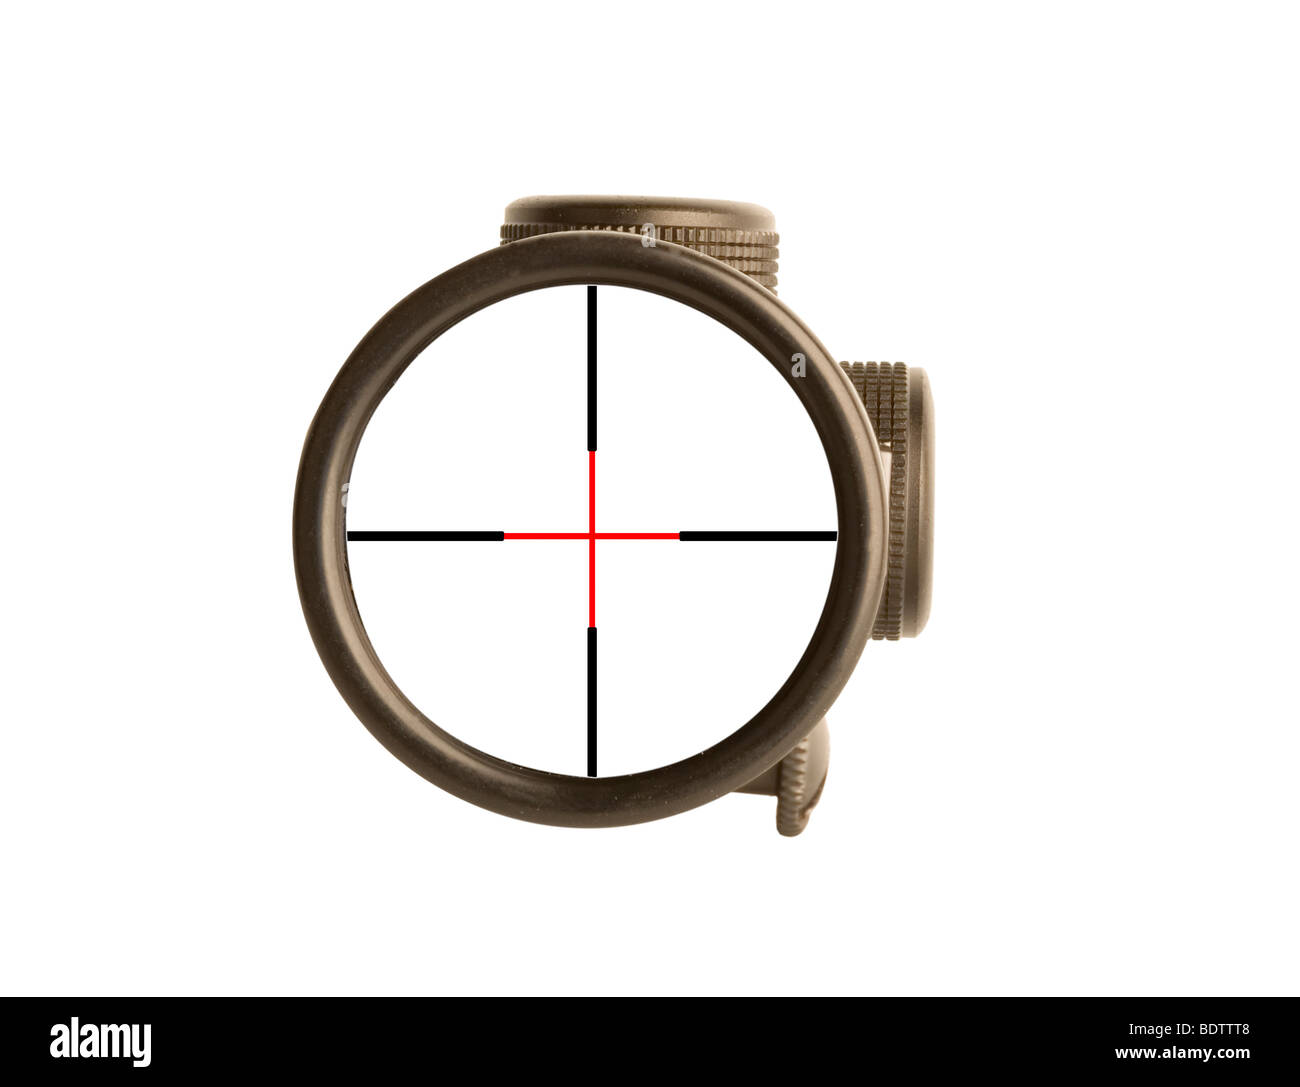 Image d'une portée de fusil de la vue utilisée pour viser avec une arme Banque D'Images